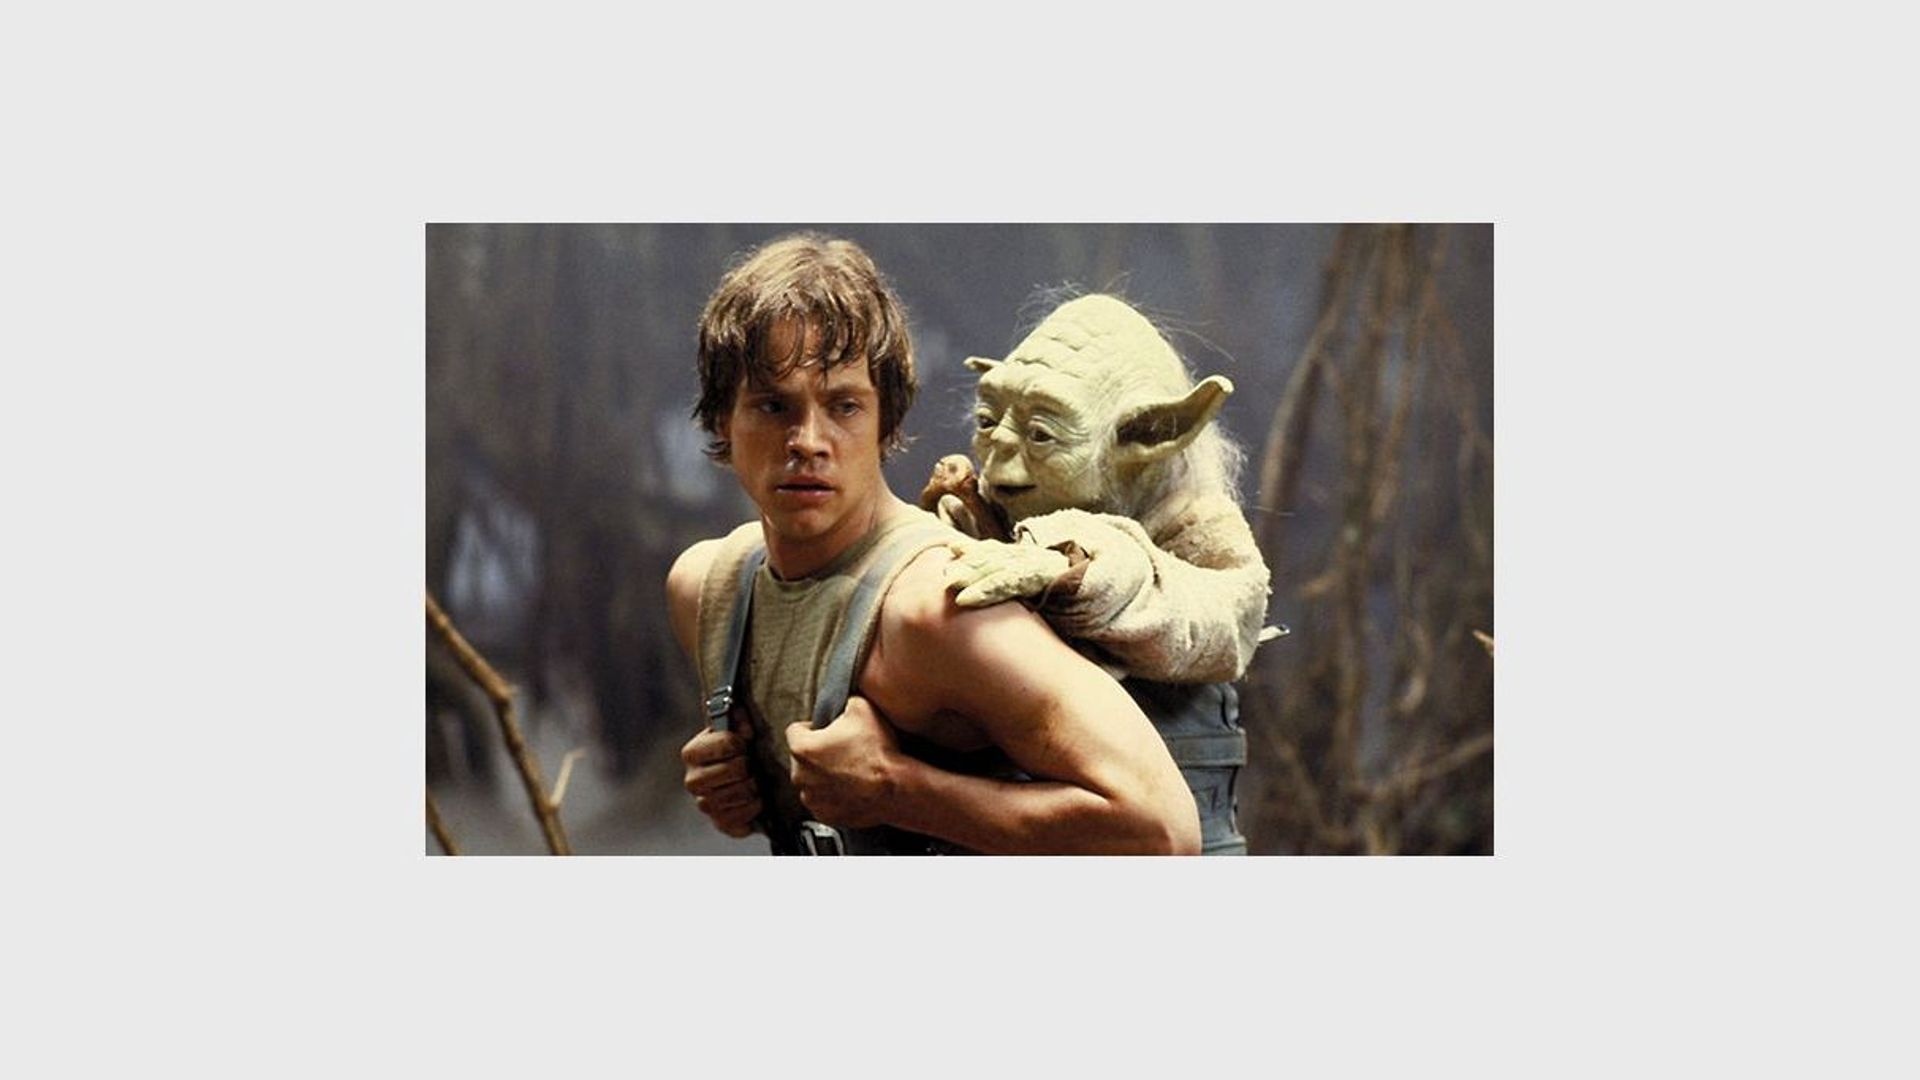 Yoda a fait sa première apparition au cinéma en 1980 dans "L'Empire contre-attaque", inculquant son enseignement à Luke Skywalker